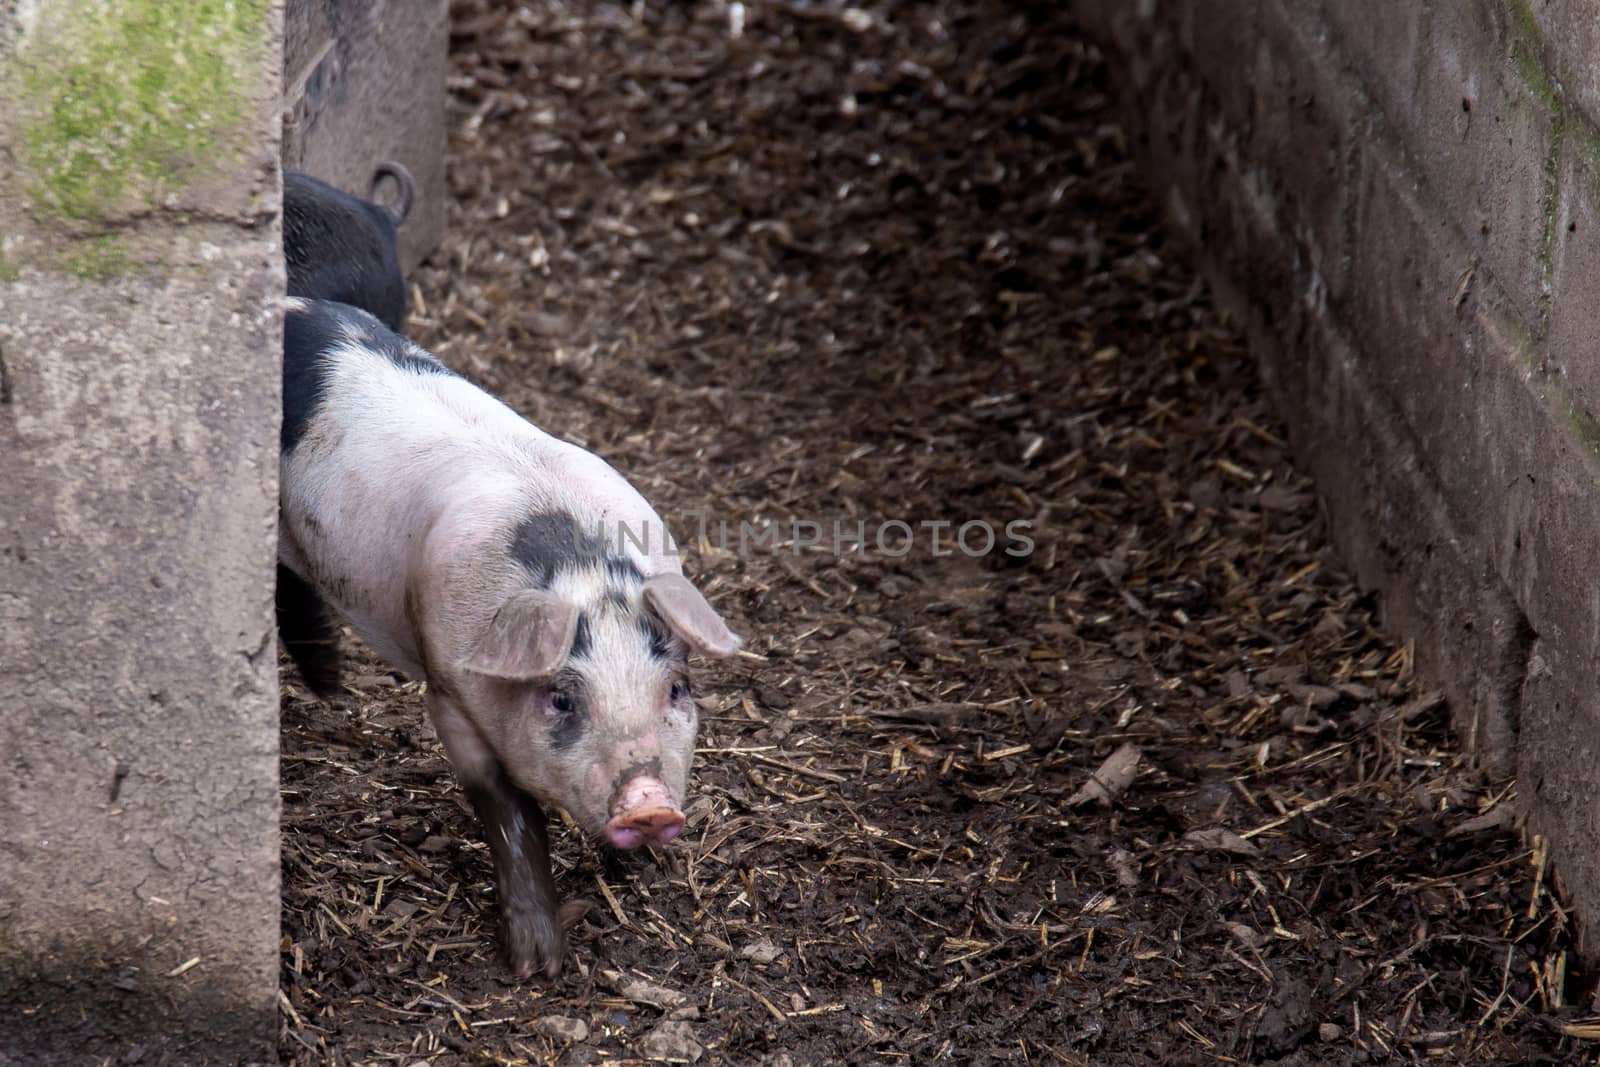 Saddleback piglet in a pigsty on a farm